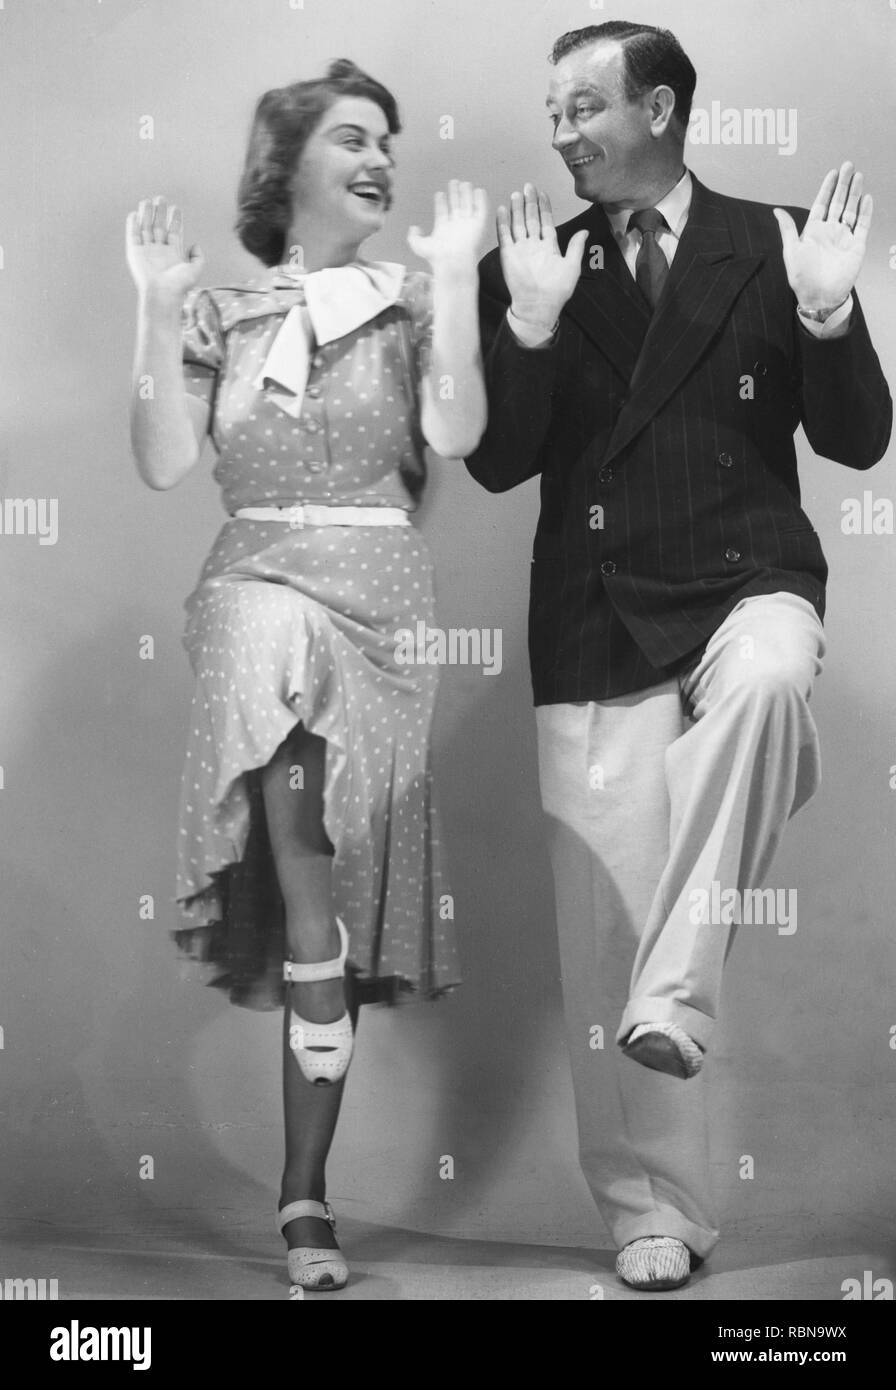 Danser dans les années 30. Un couple est représenté dansant ensemble lors du tournage d'un film. Acteurs Sickan Carlsson et Elof Ahrle 1939 Banque D'Images